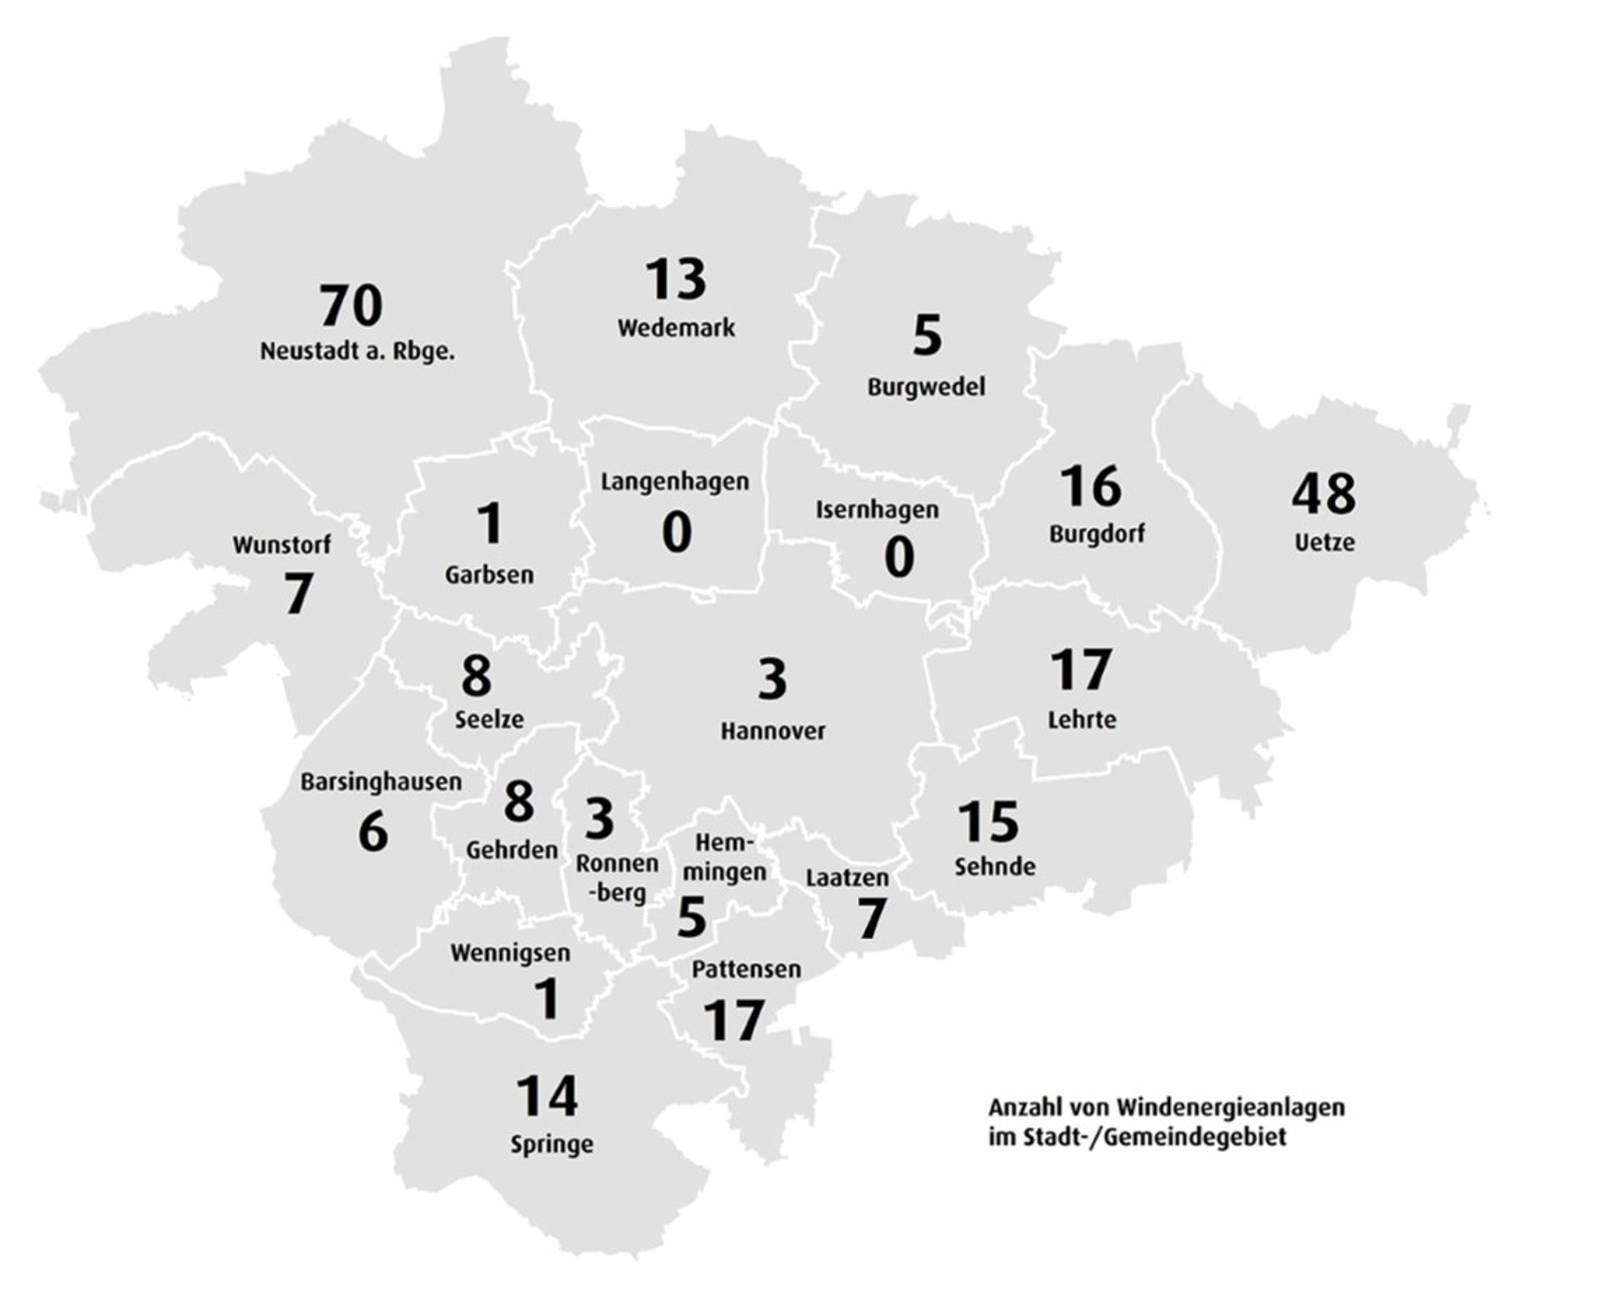 Schematische Darstellung der Region Hannover auf der die Anzahl der Windenergie-Anlage pro Kommune Stand 2023 eingetragen ist